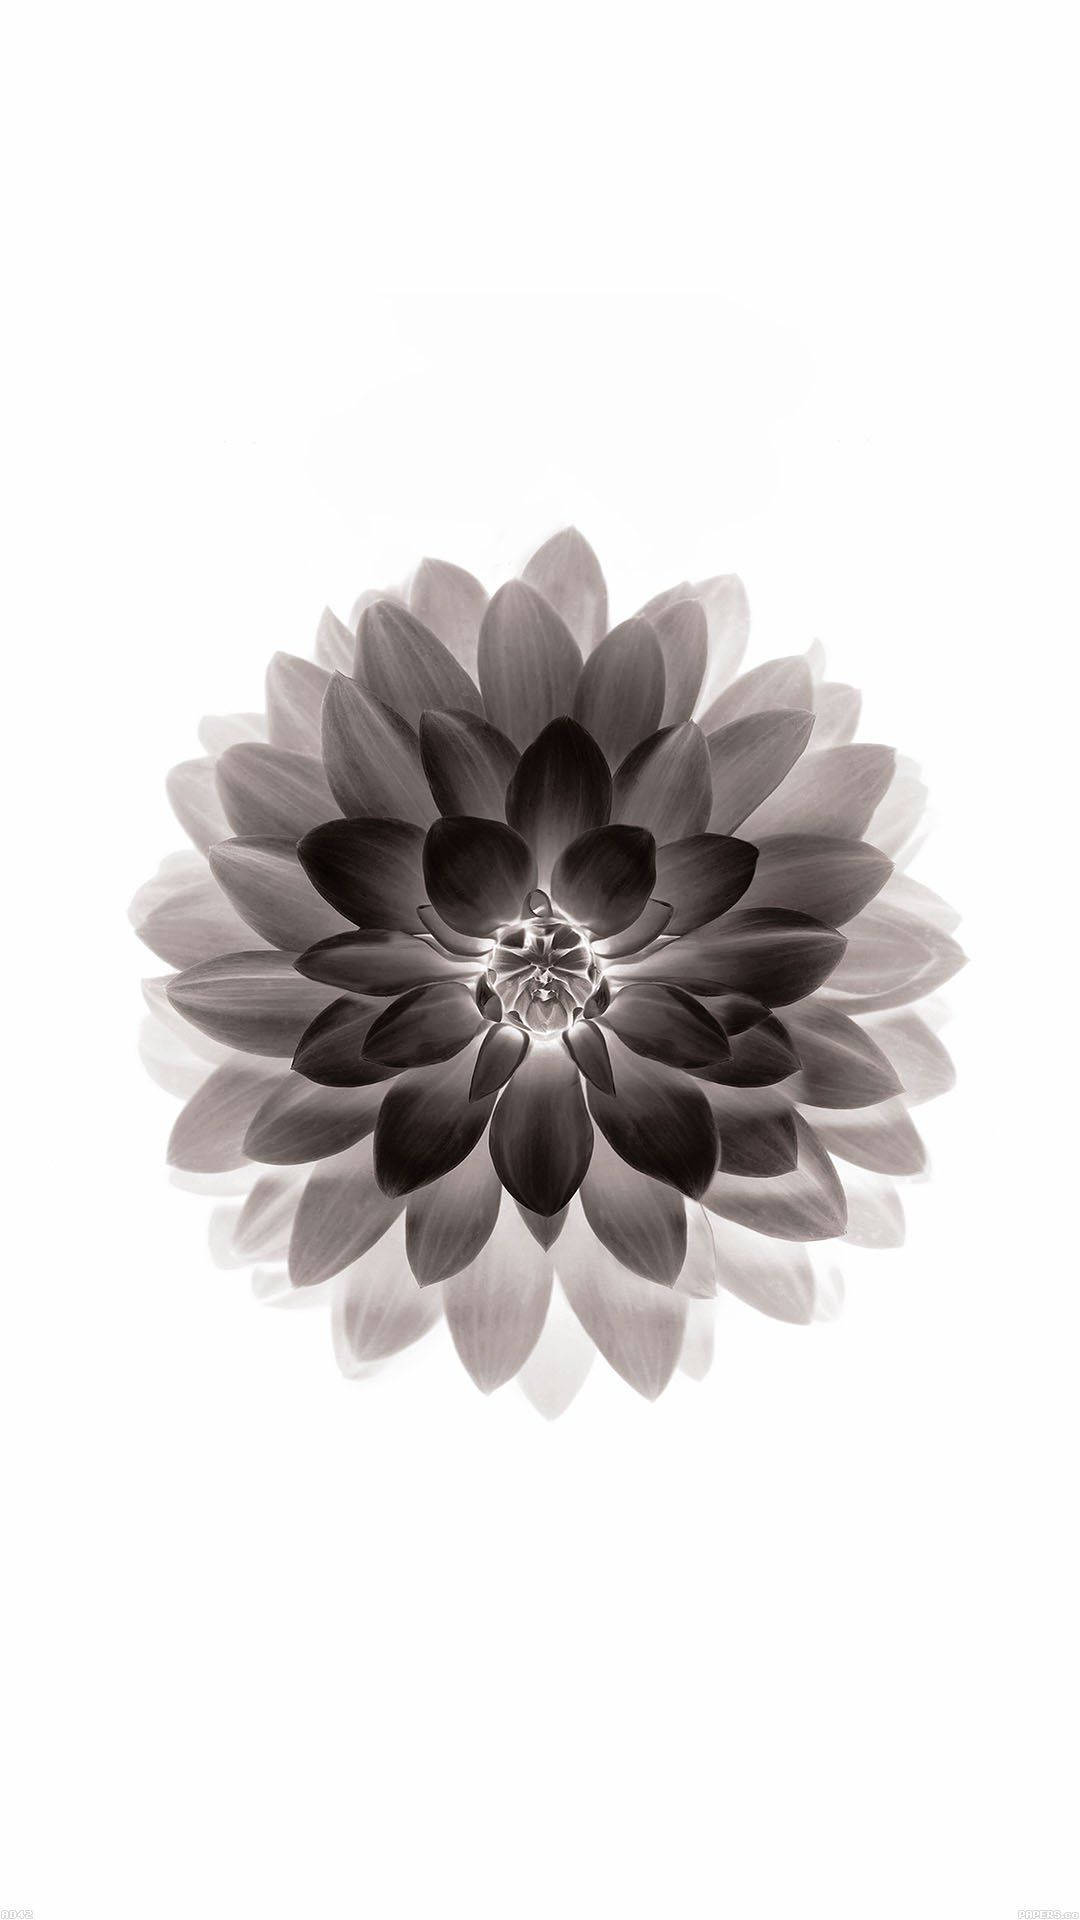 Florde Dalia Oscura Para Apple. Fondo de pantalla